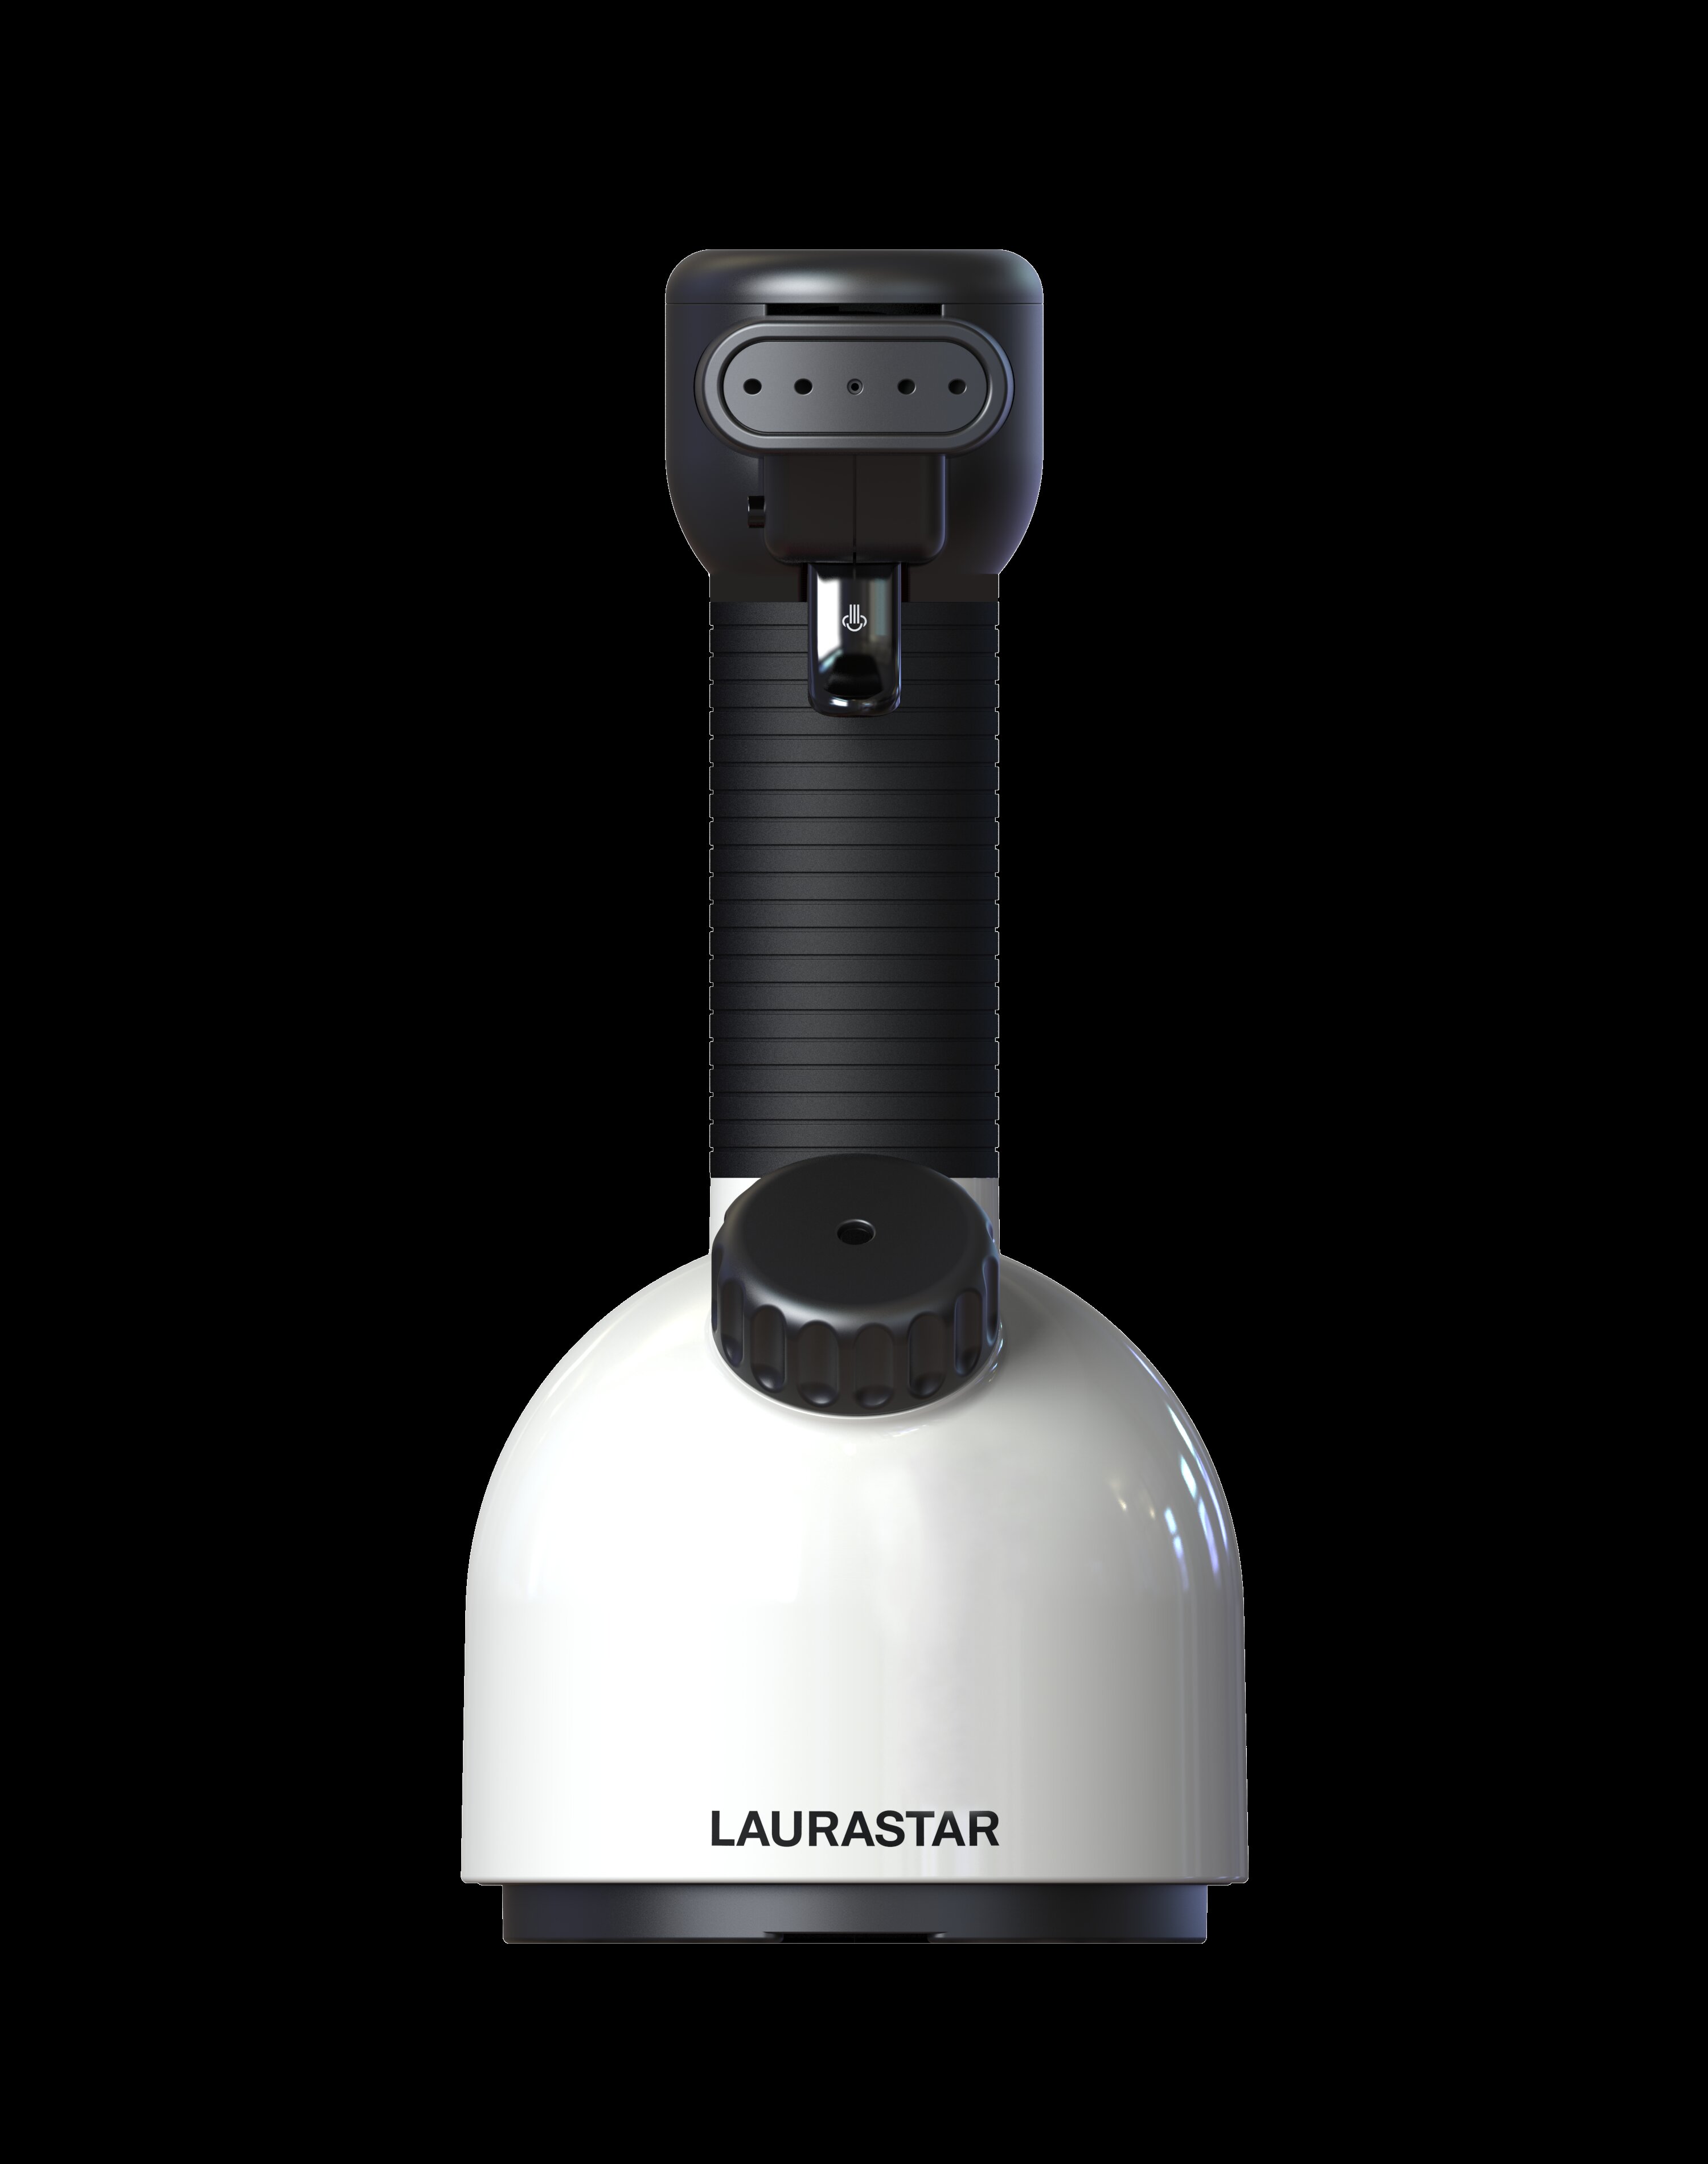 Laurastar 1600 Watt Handheld Steamer | & Wayfair Reviews